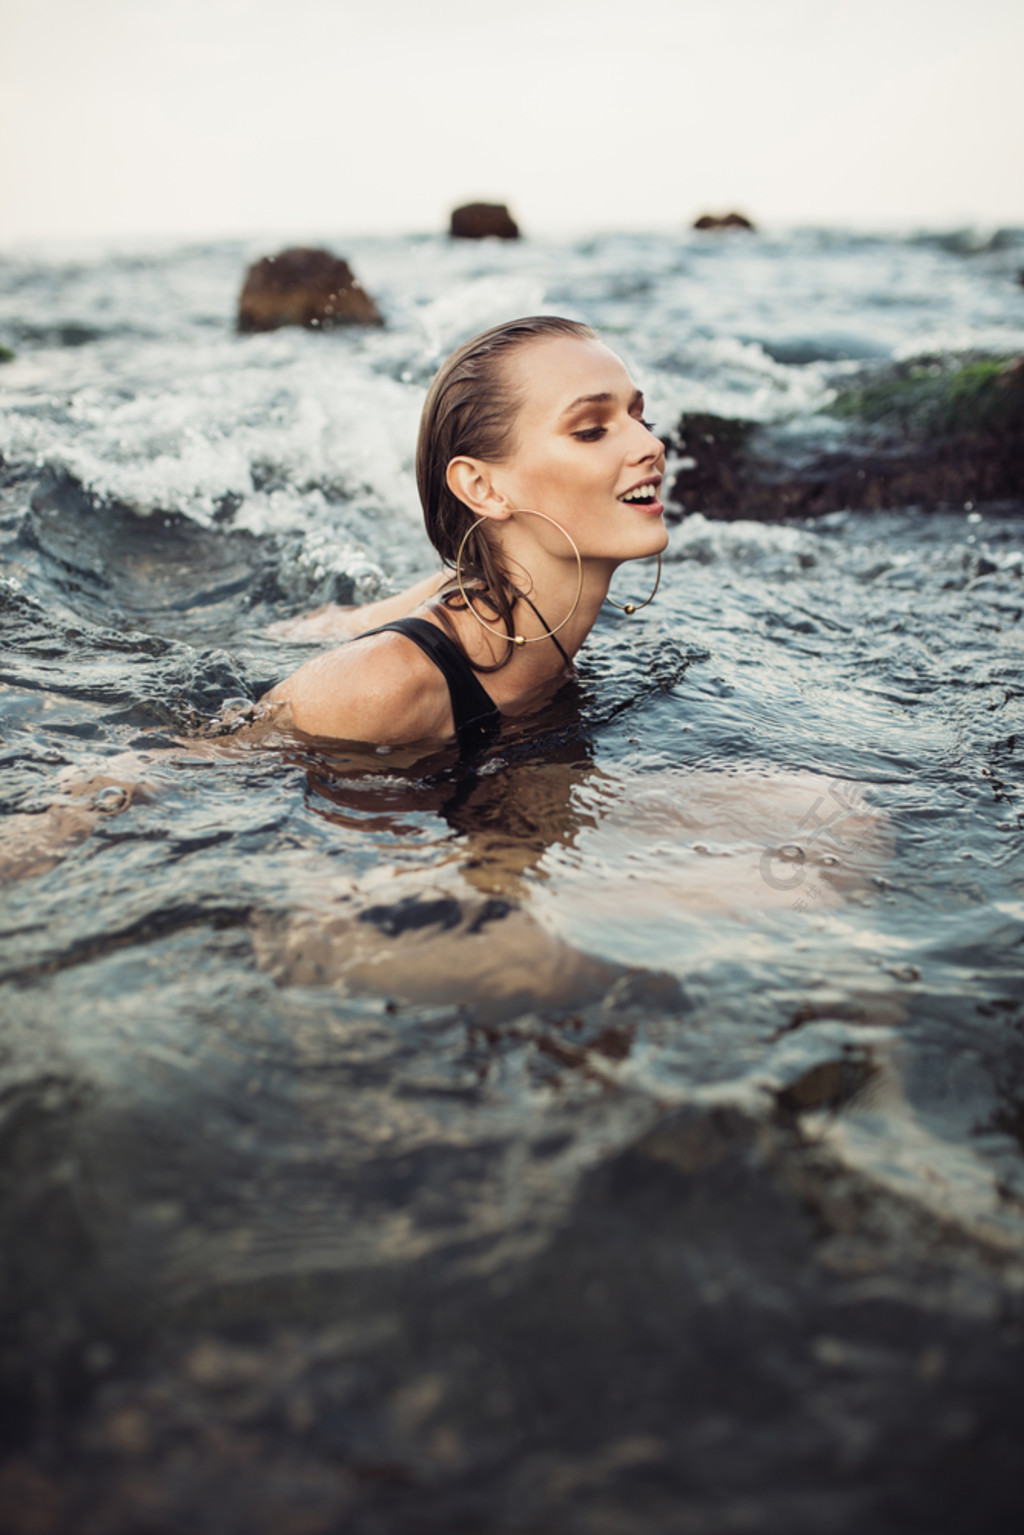 的微笑的女孩与湿头发在黑色泳衣和大现代耳环快乐地独自在海里游泳